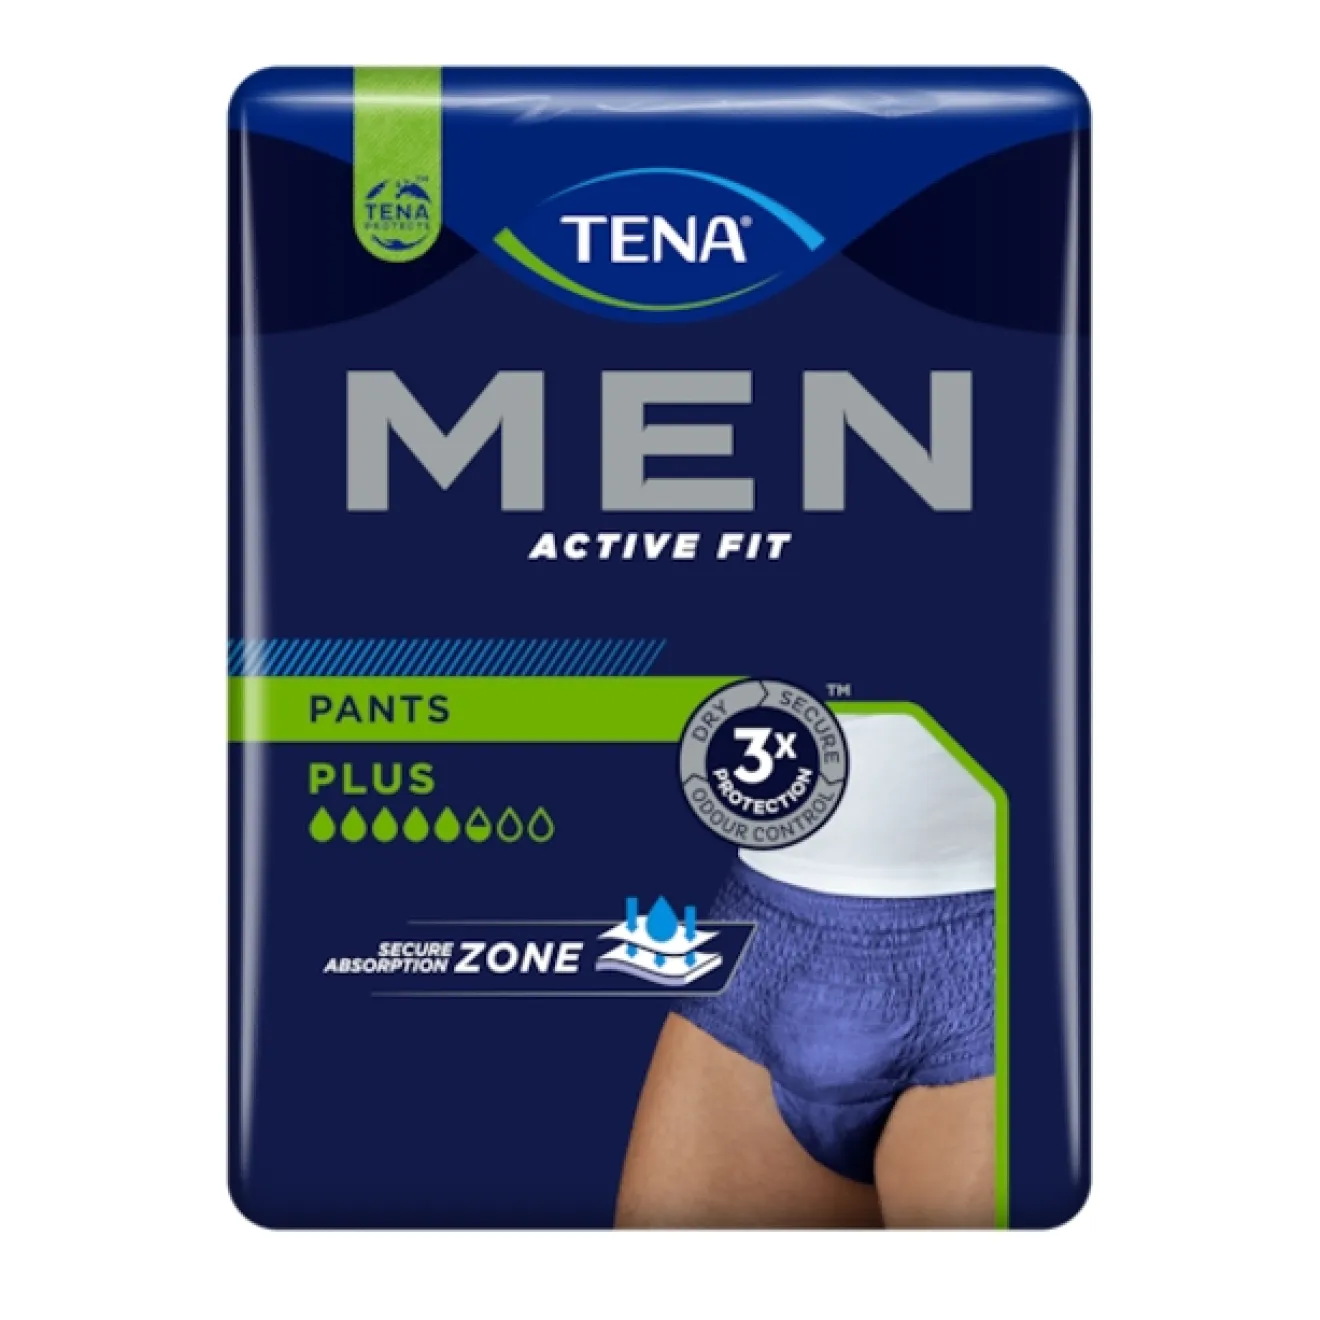 TENA MEN Active Fit Inkontinenz Pants plus L/XL blau 10 ST